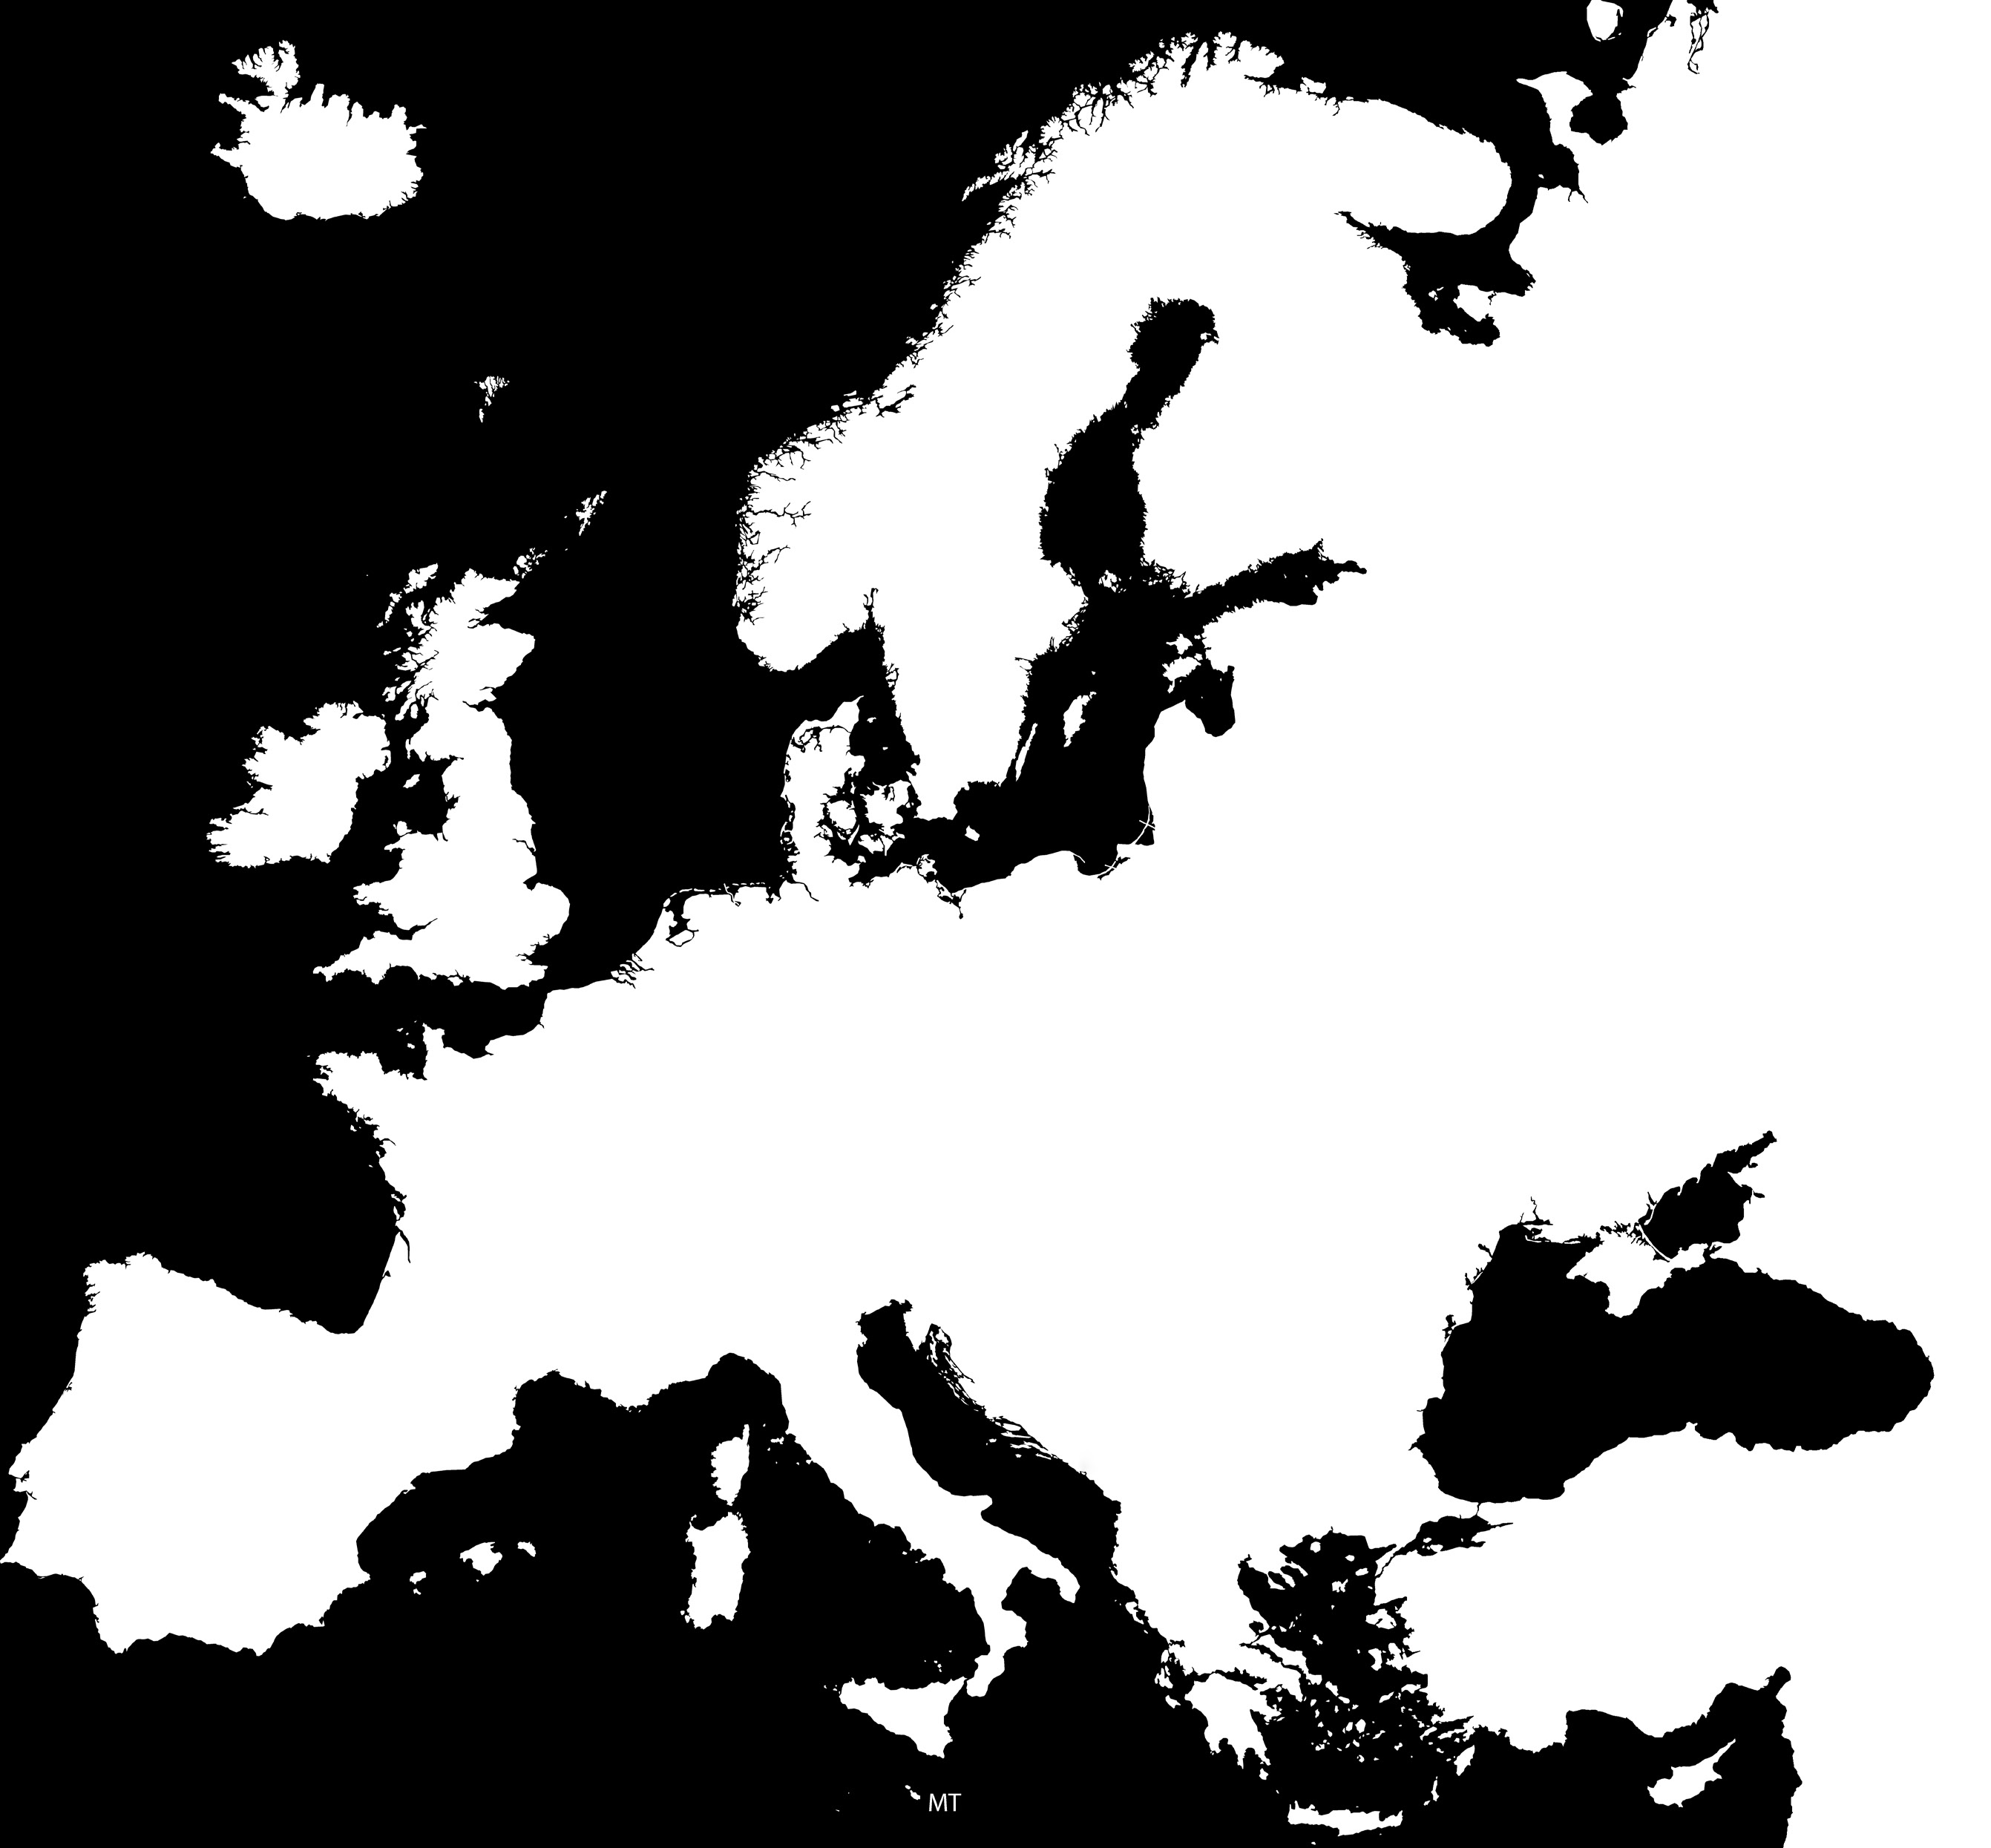 Estados Membros da União Europeia que fazem parte do Espaço Schengen (*) 1995: Alemanha, Bélgica, Espanha, França, Luxemburgo, Países Baixos, Portugal 1997: Áustria, Itália 2000: Grécia 2001: